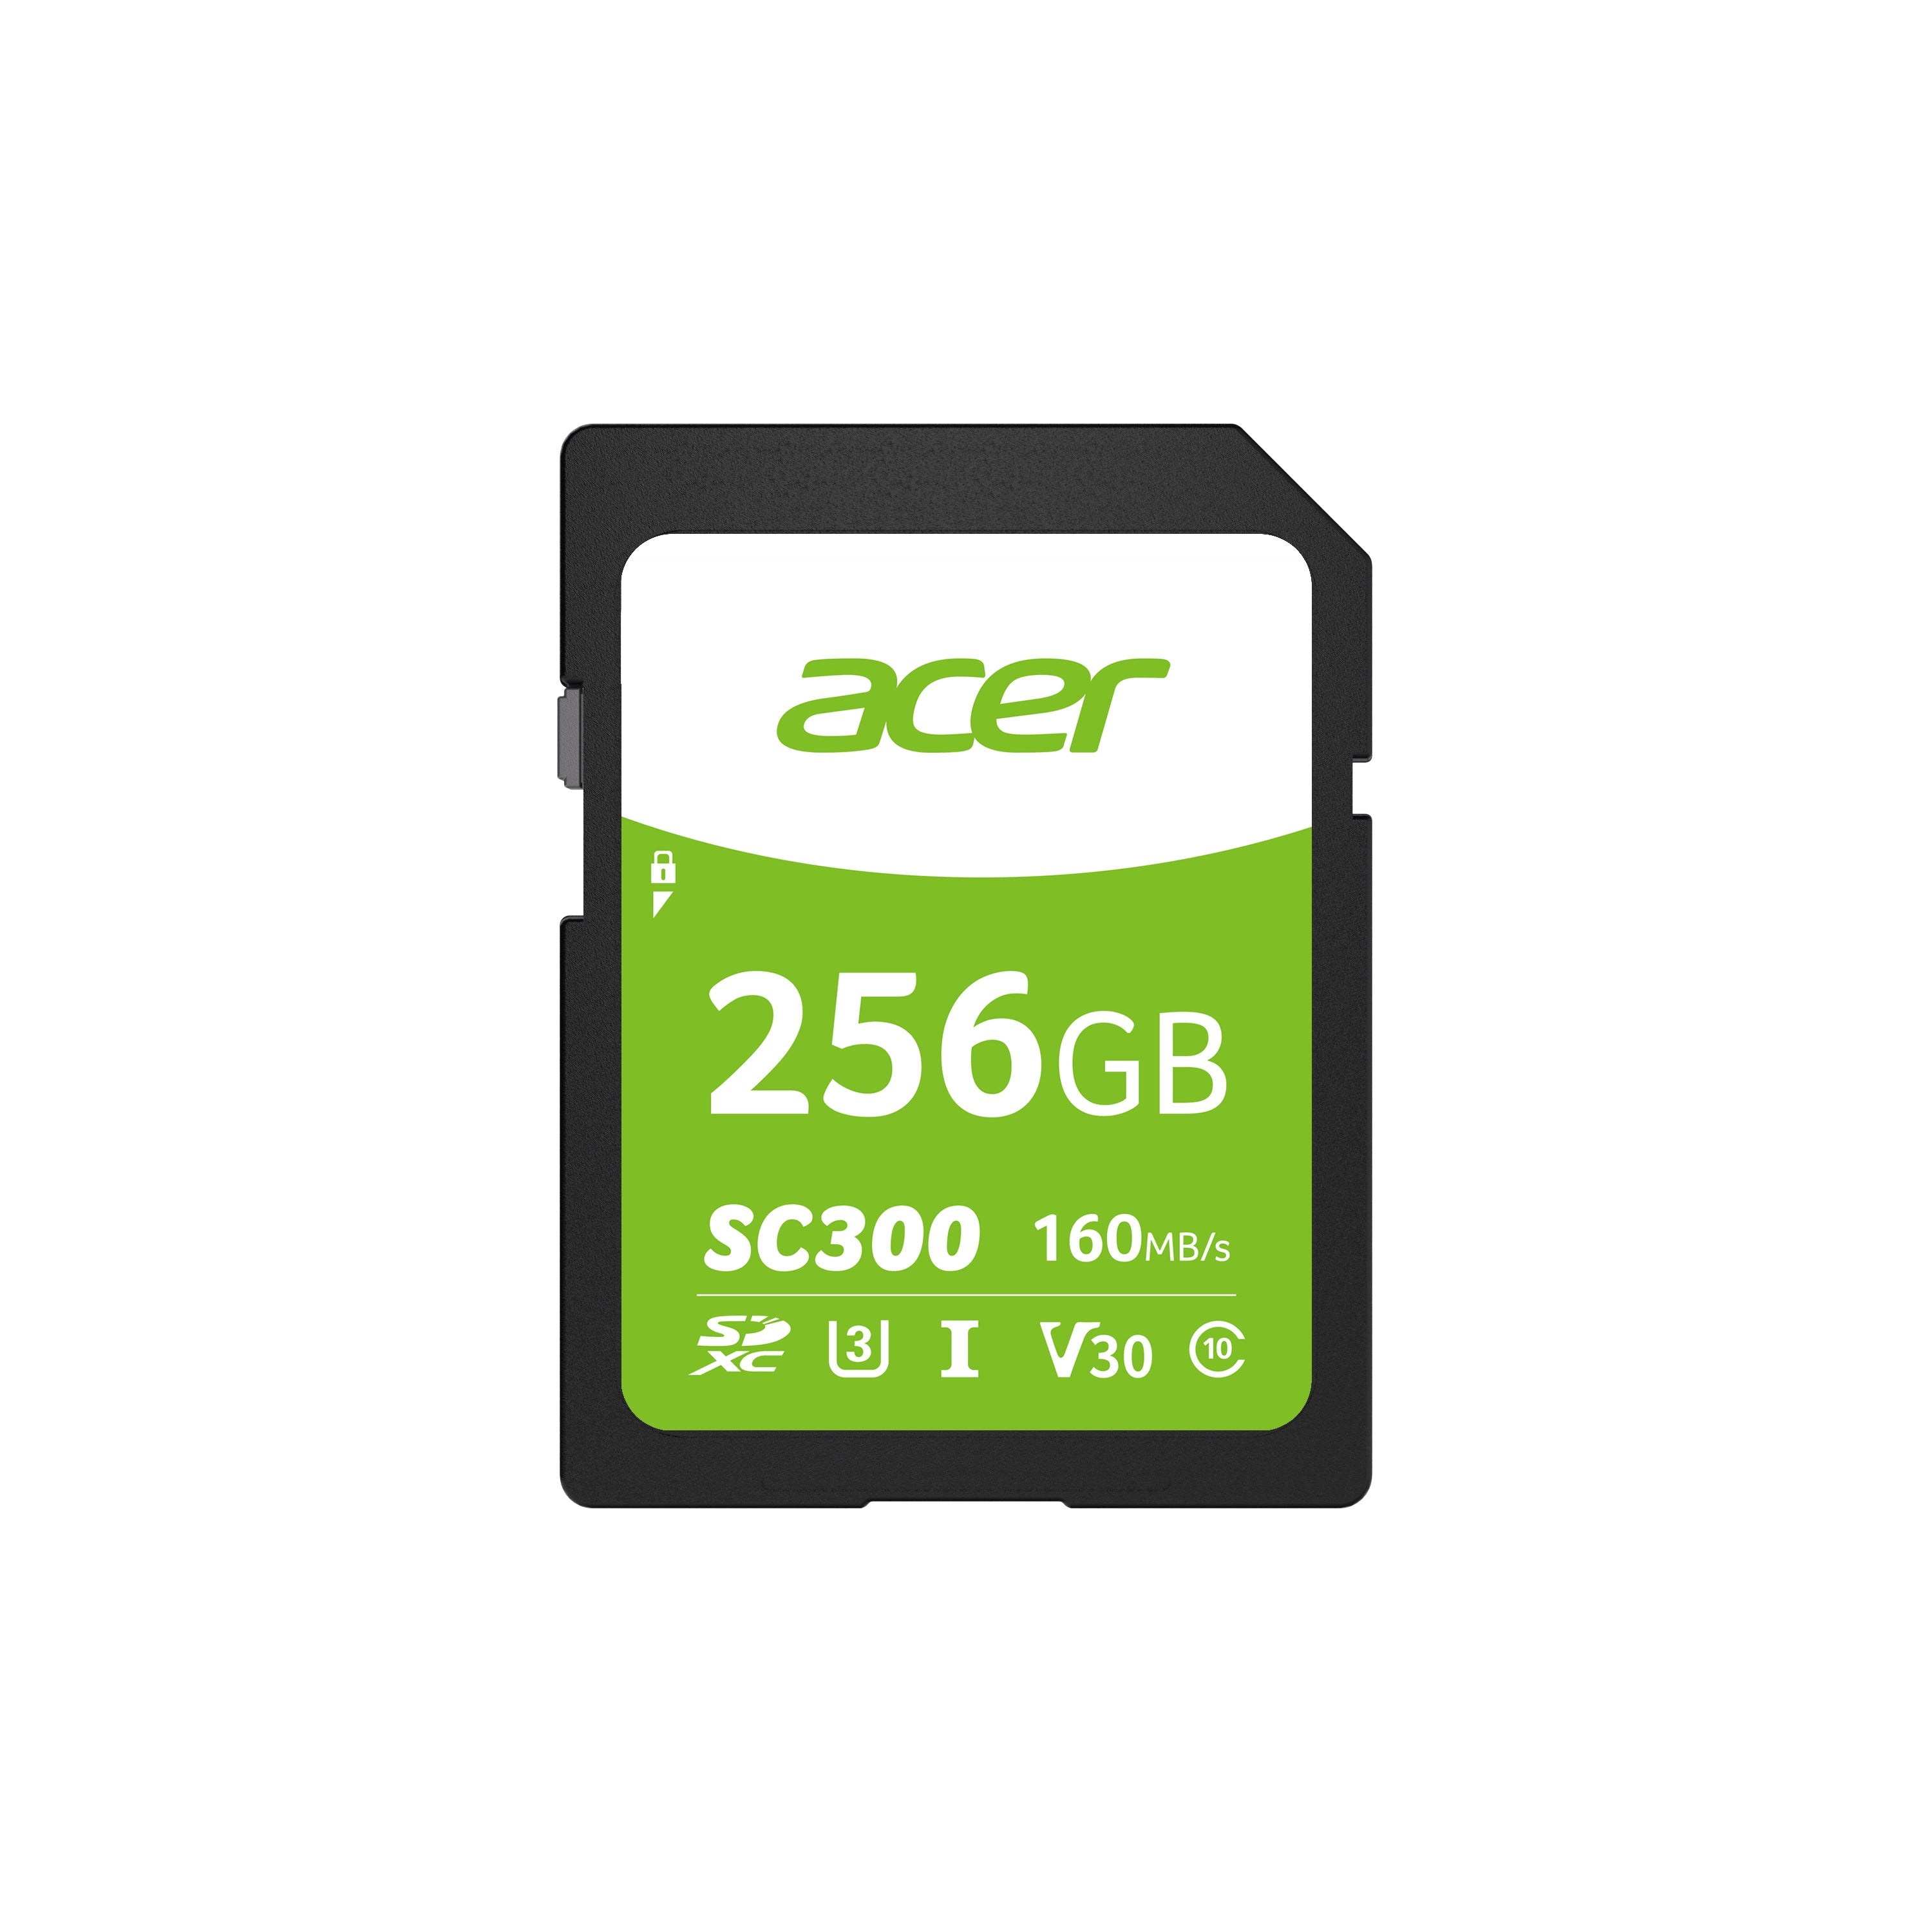 Memoria Acer Sd Sc300 256gb 160 Mb/S (Bl.9bwwa.309)